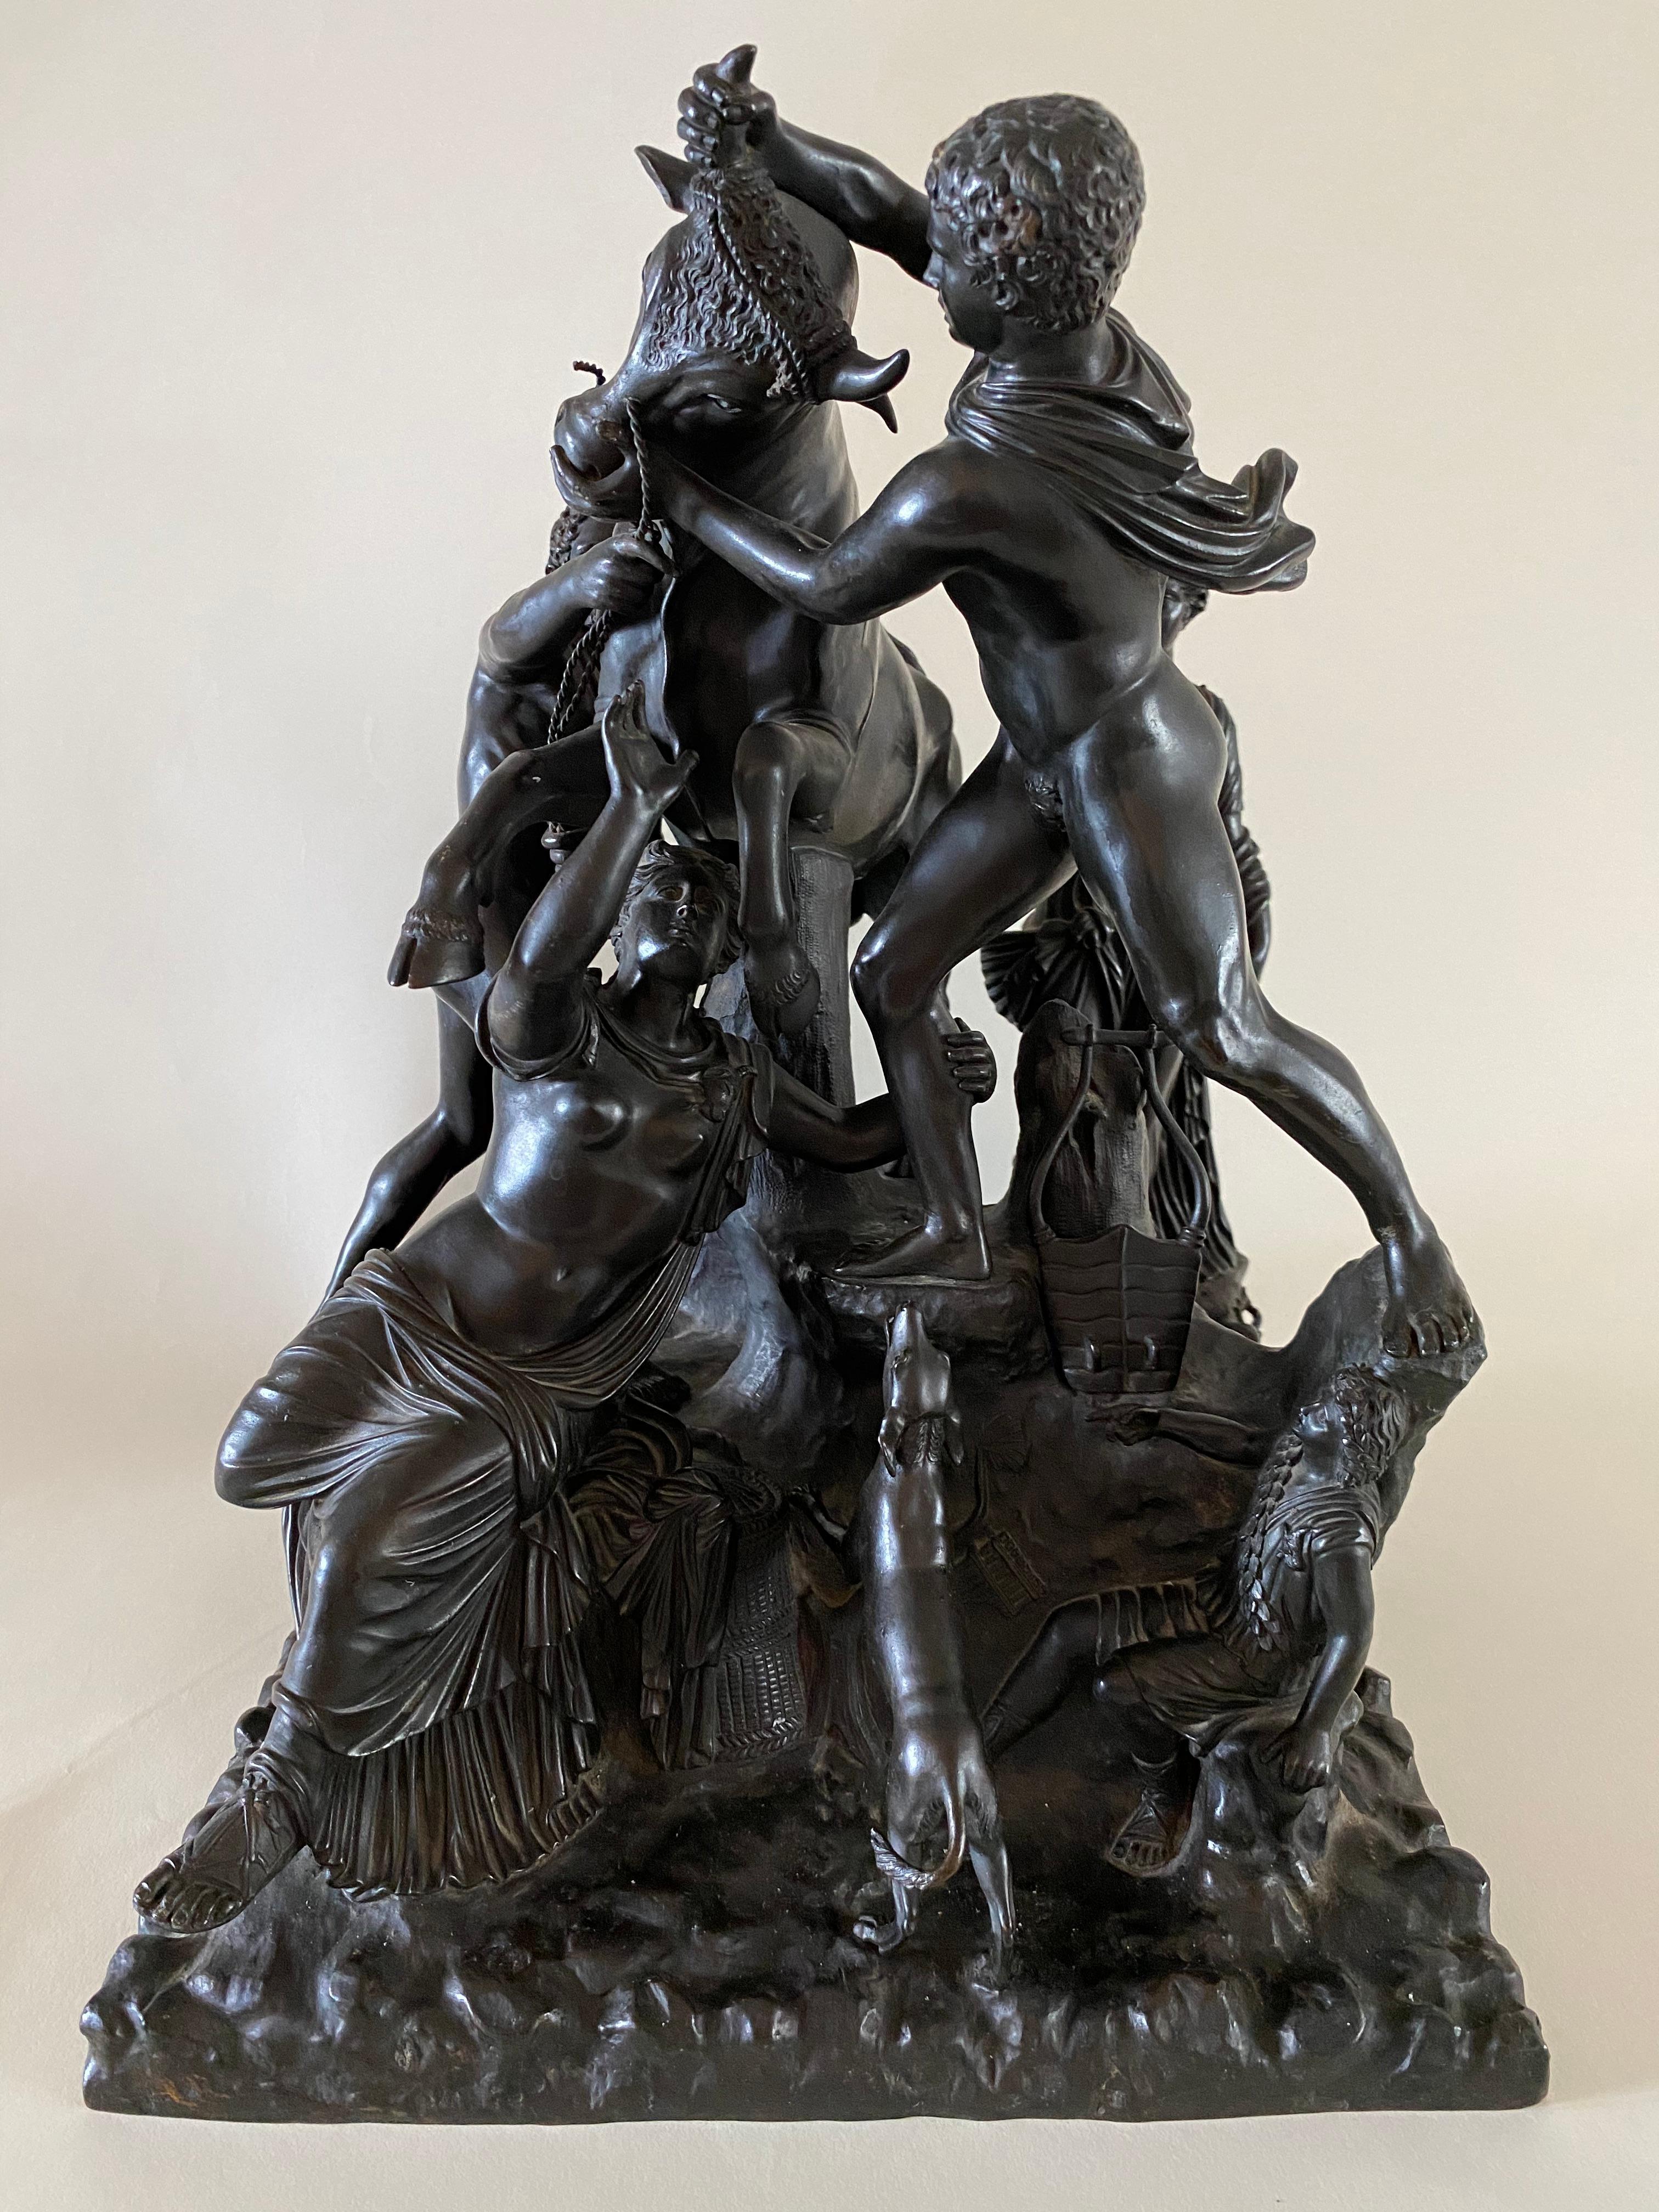 Ce groupe de sculptures italiennes en bronze du taureau Farnèse, d'après l'antique, est joliment modelé et détaillé, avec une belle patine noirâtre à brun cacao. Chaque figure moulée séparément représente un taureau enragé debout sur une base